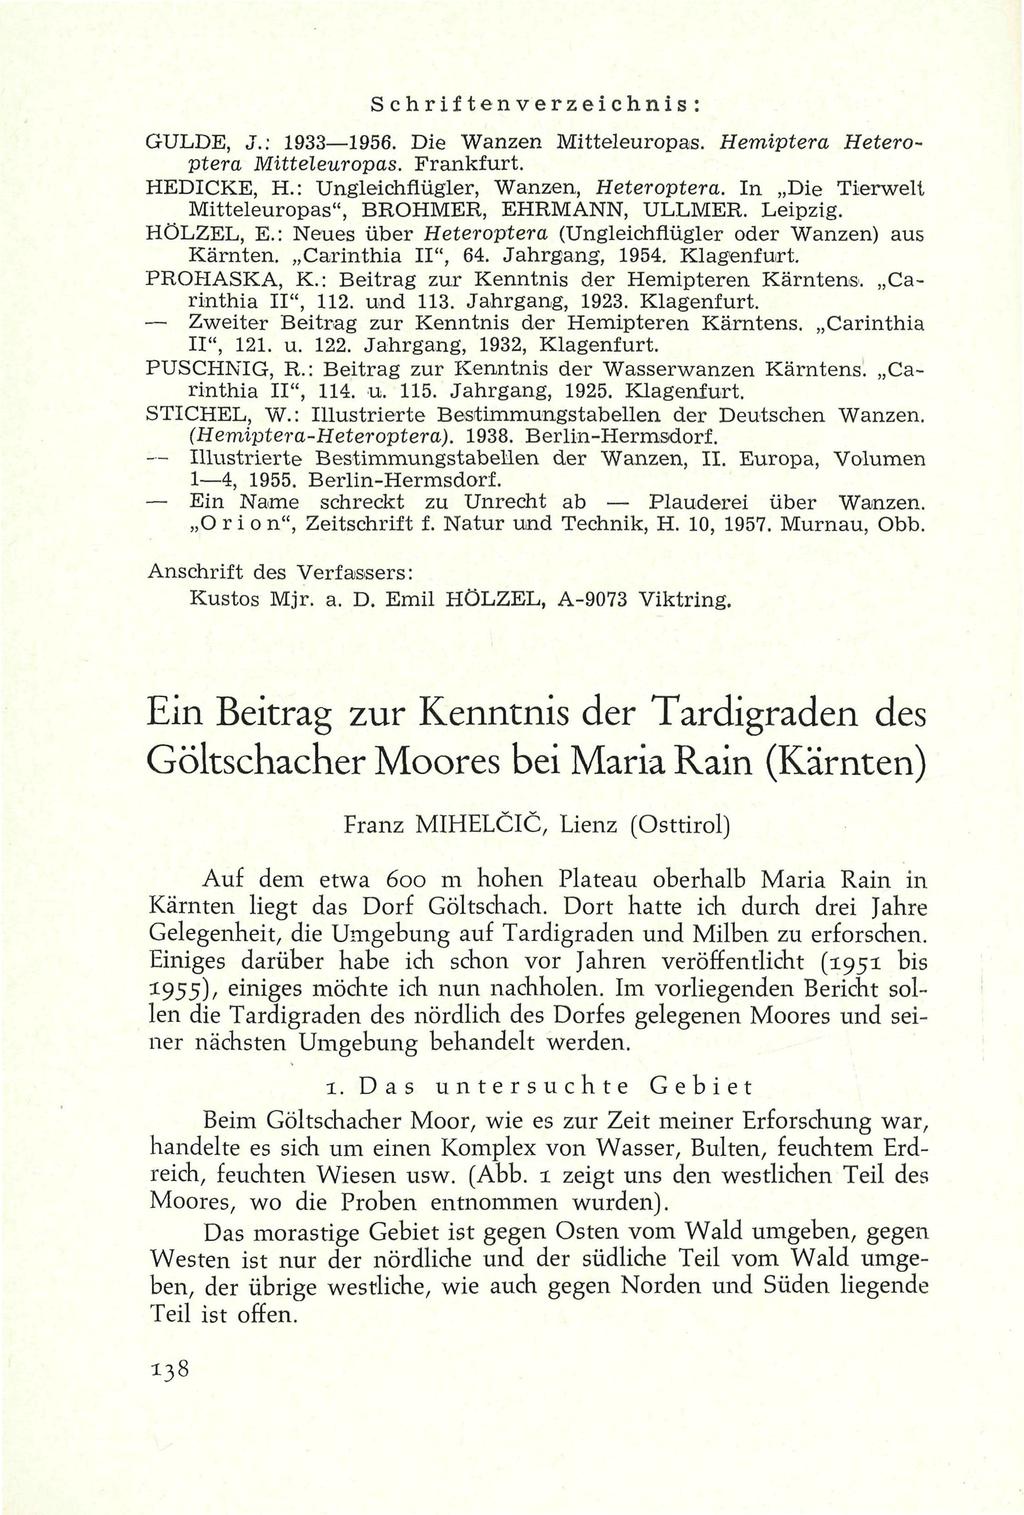 Schriftenverzeichnis: GULDE, J.: 1933 1956. Die Wanzen Mitteleuropas. Hemiptera Heteroptera Mitteleuropas. Frankfurt. HEDICKE, H.: Ungleichflügler, Wanzen, Heteroptera.